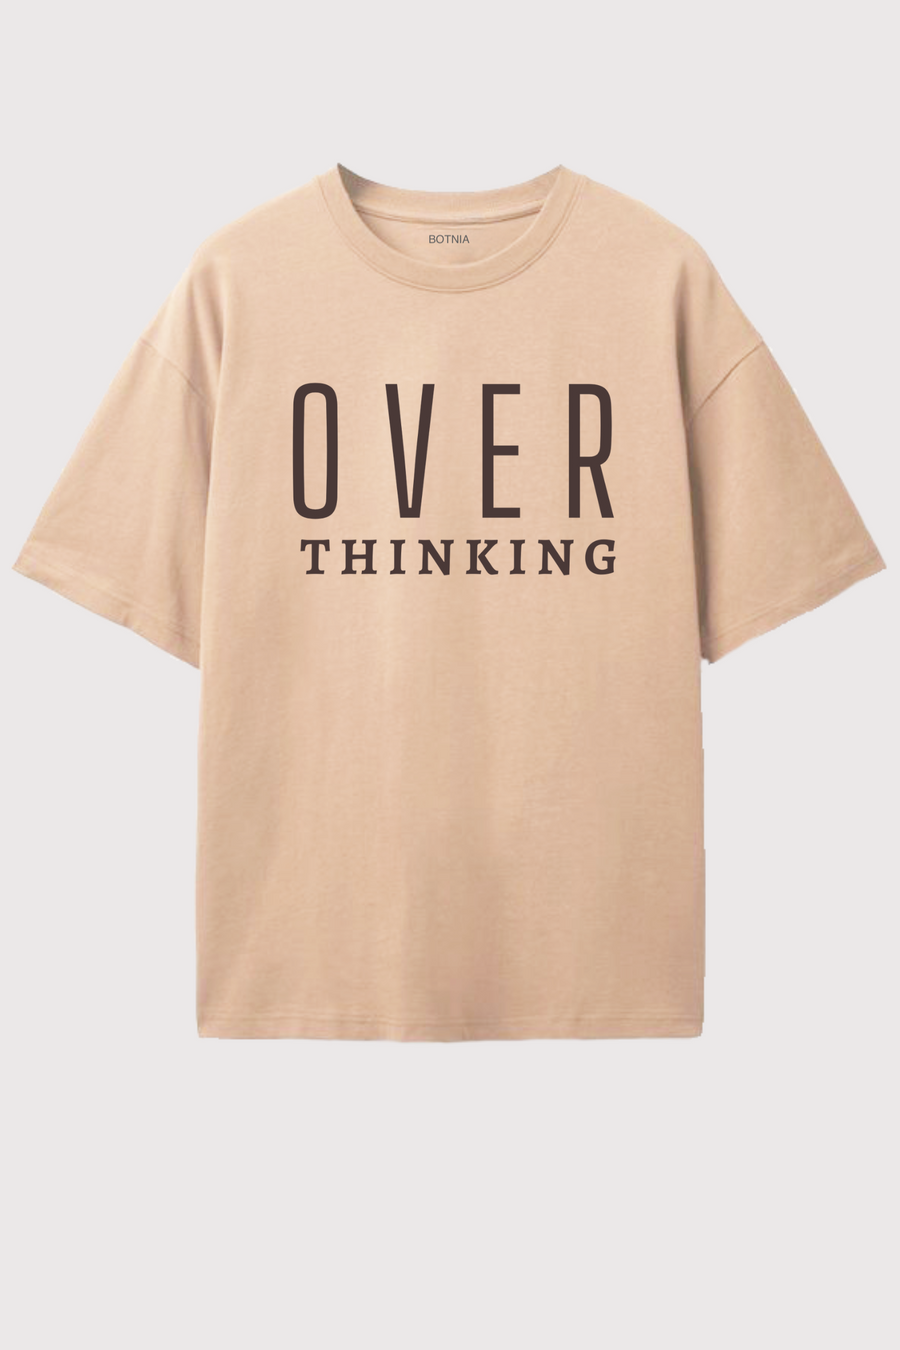 Over Thinking- Oversized t-shirt